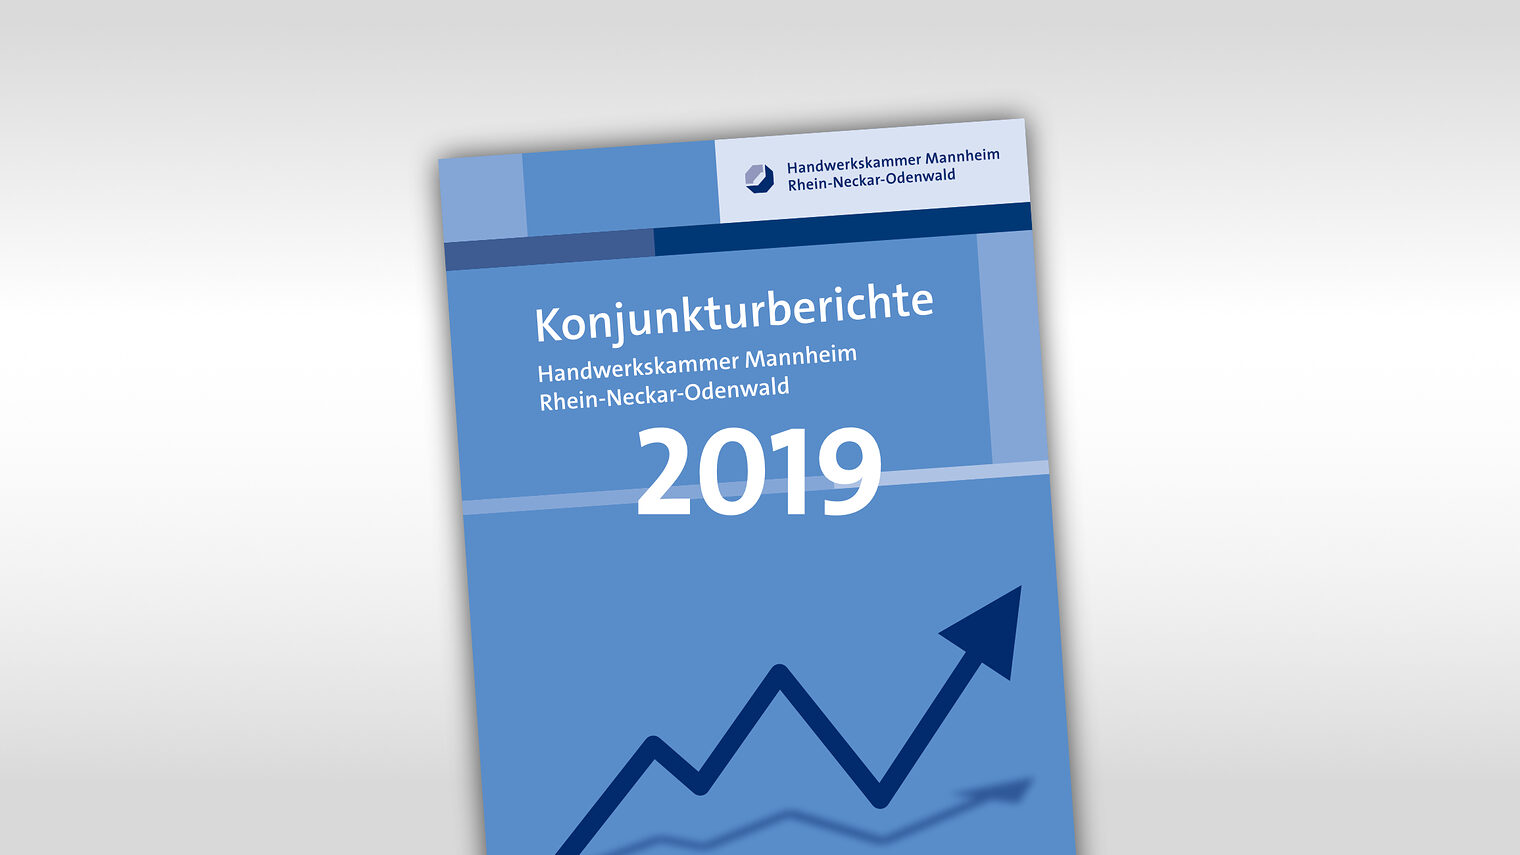 Titelmotiv Konjunkturbericht plus Jahreszahl 2019